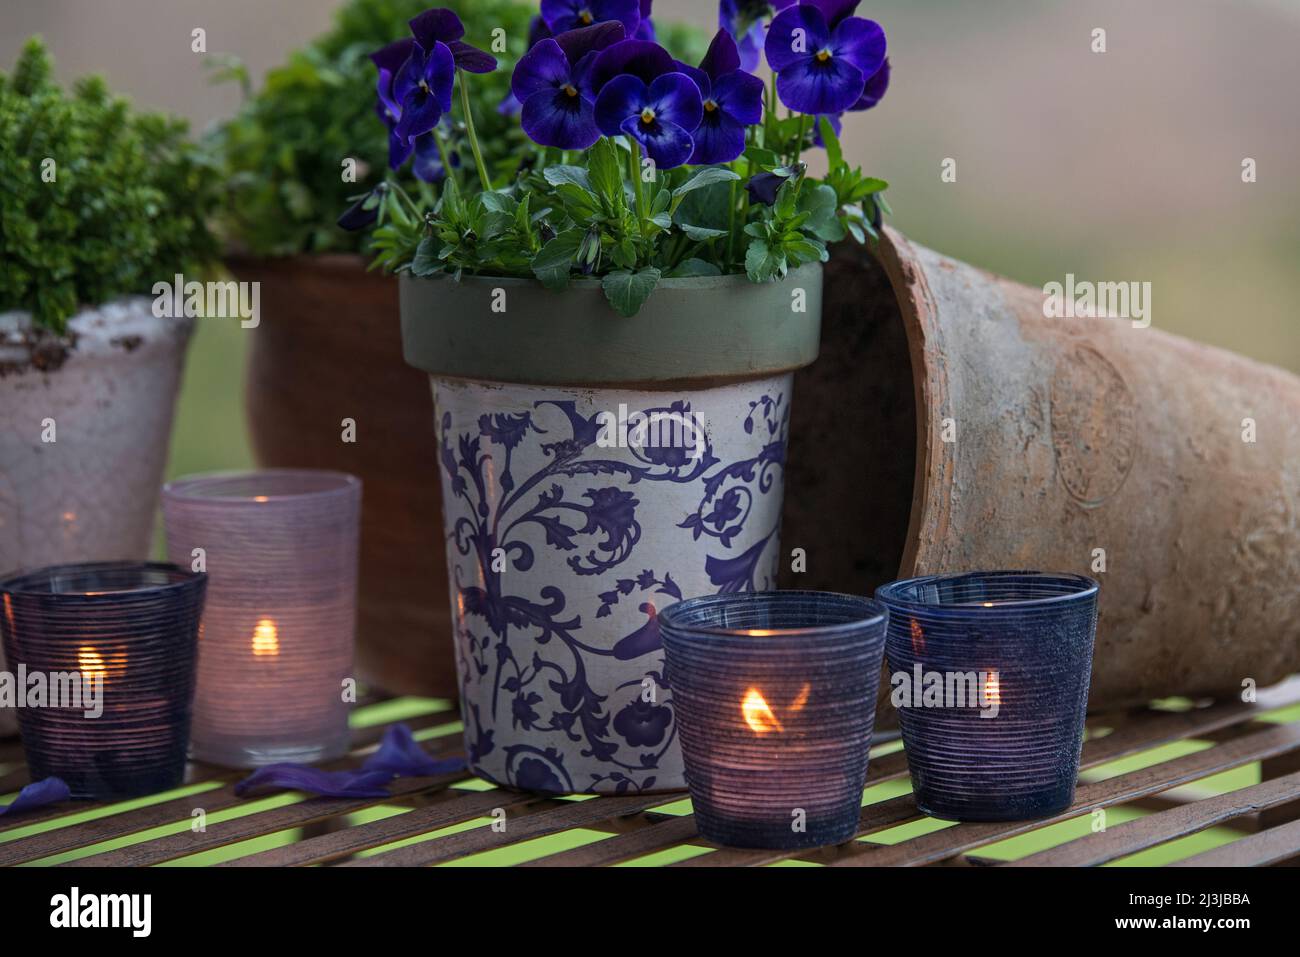 Stillleben, blau blühende Hornveilchen und brennende Kerzen in Laternen, stimmungsvolle Dekoration in violetten und blauen Farbtönen Stockfoto